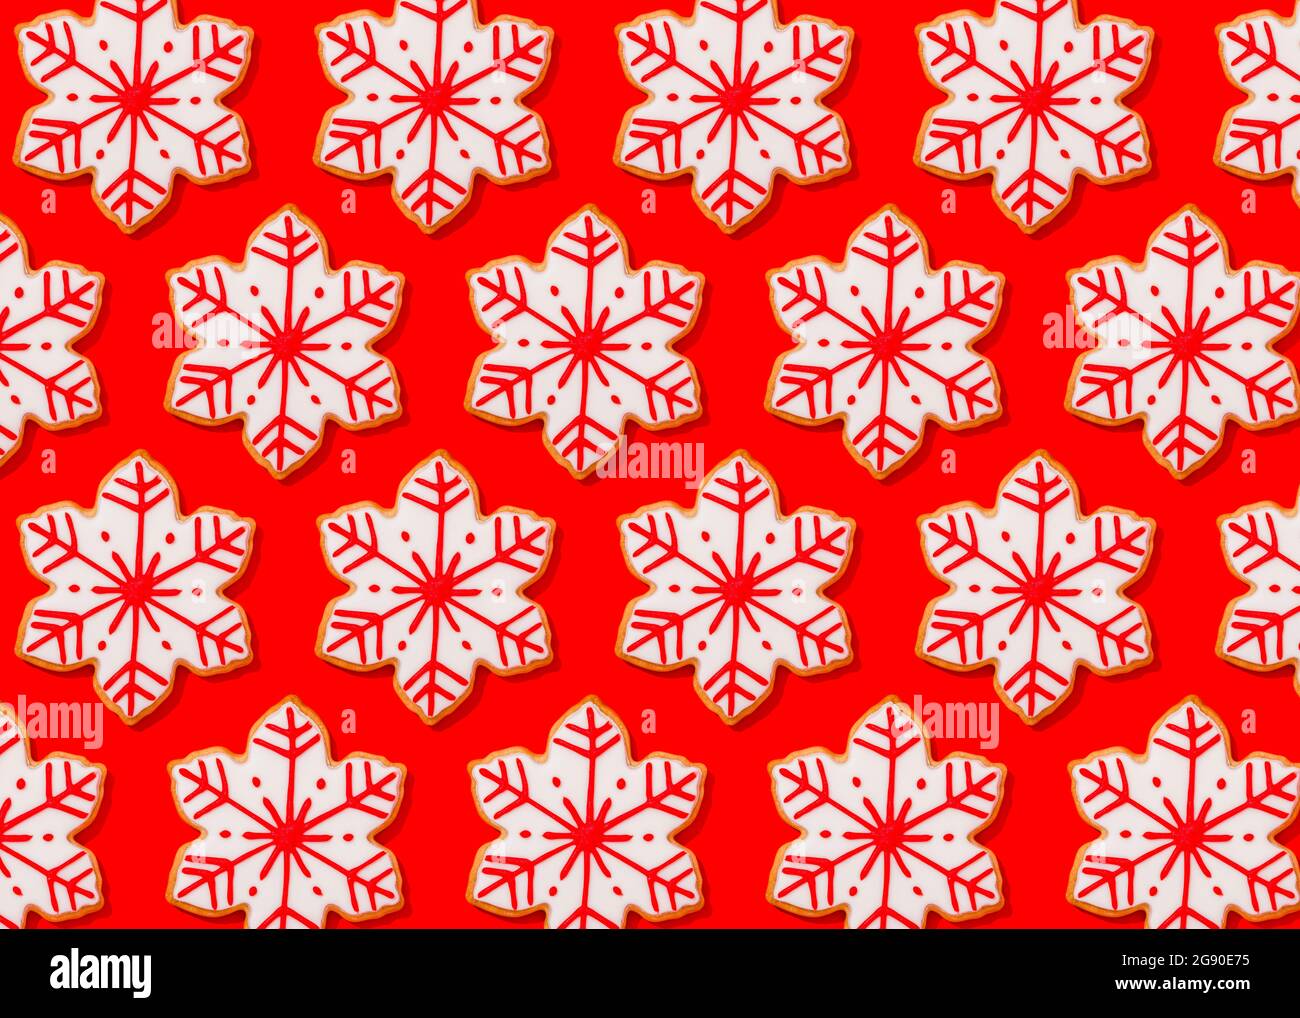 Motif de biscuits de Noël en forme de flocons de neige posé à plat sur fond rouge vif Banque D'Images